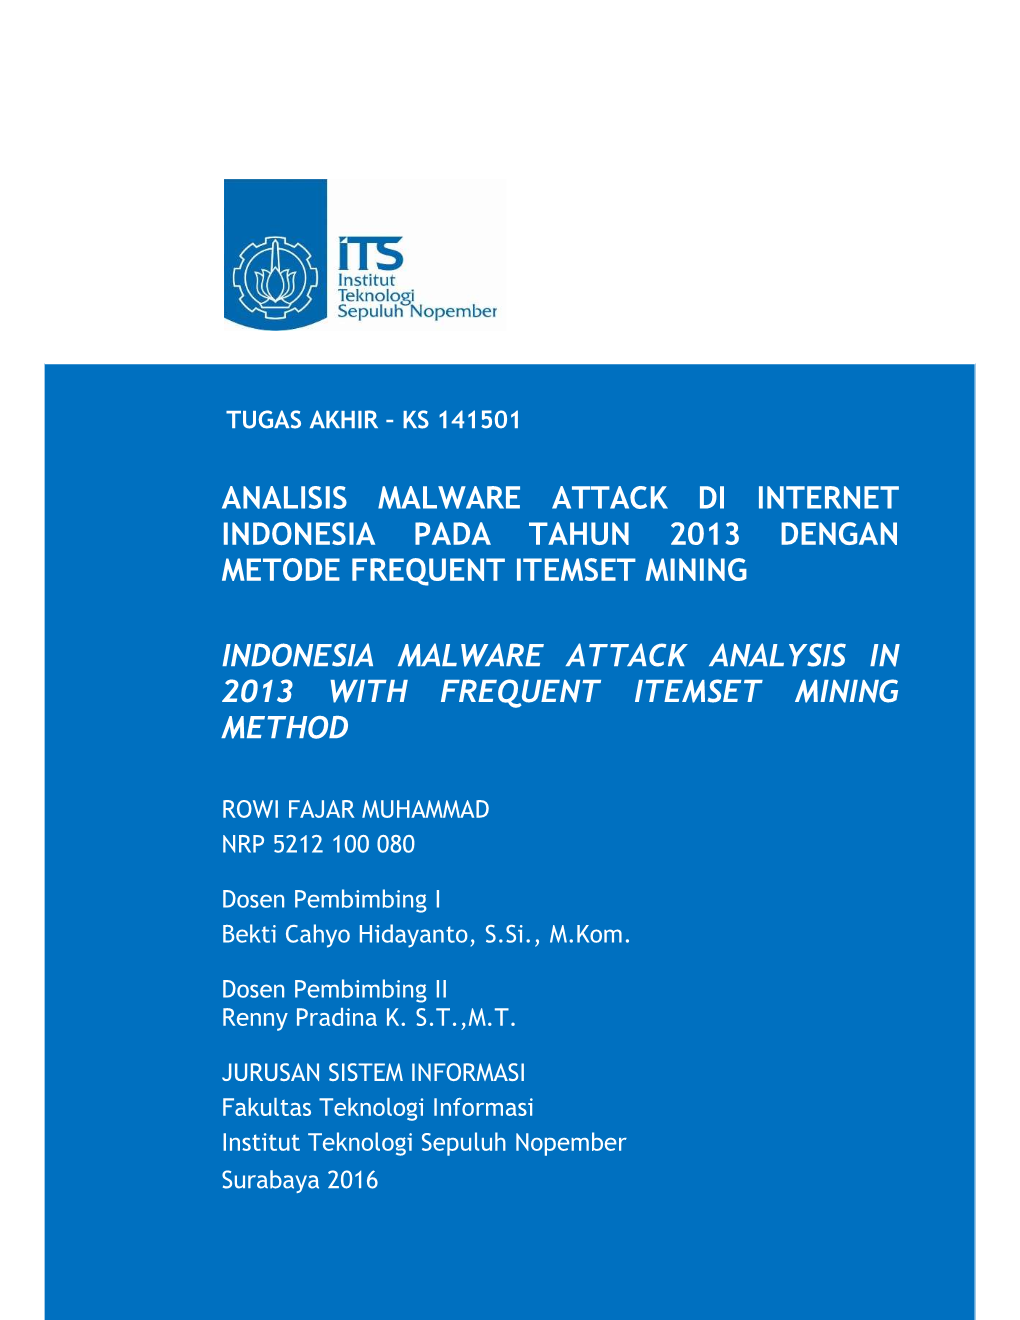 Analisis Malware Attack Di Internet Indonesia Pada Tahun 2013 Dengan Metode Frequent Itemset Mining